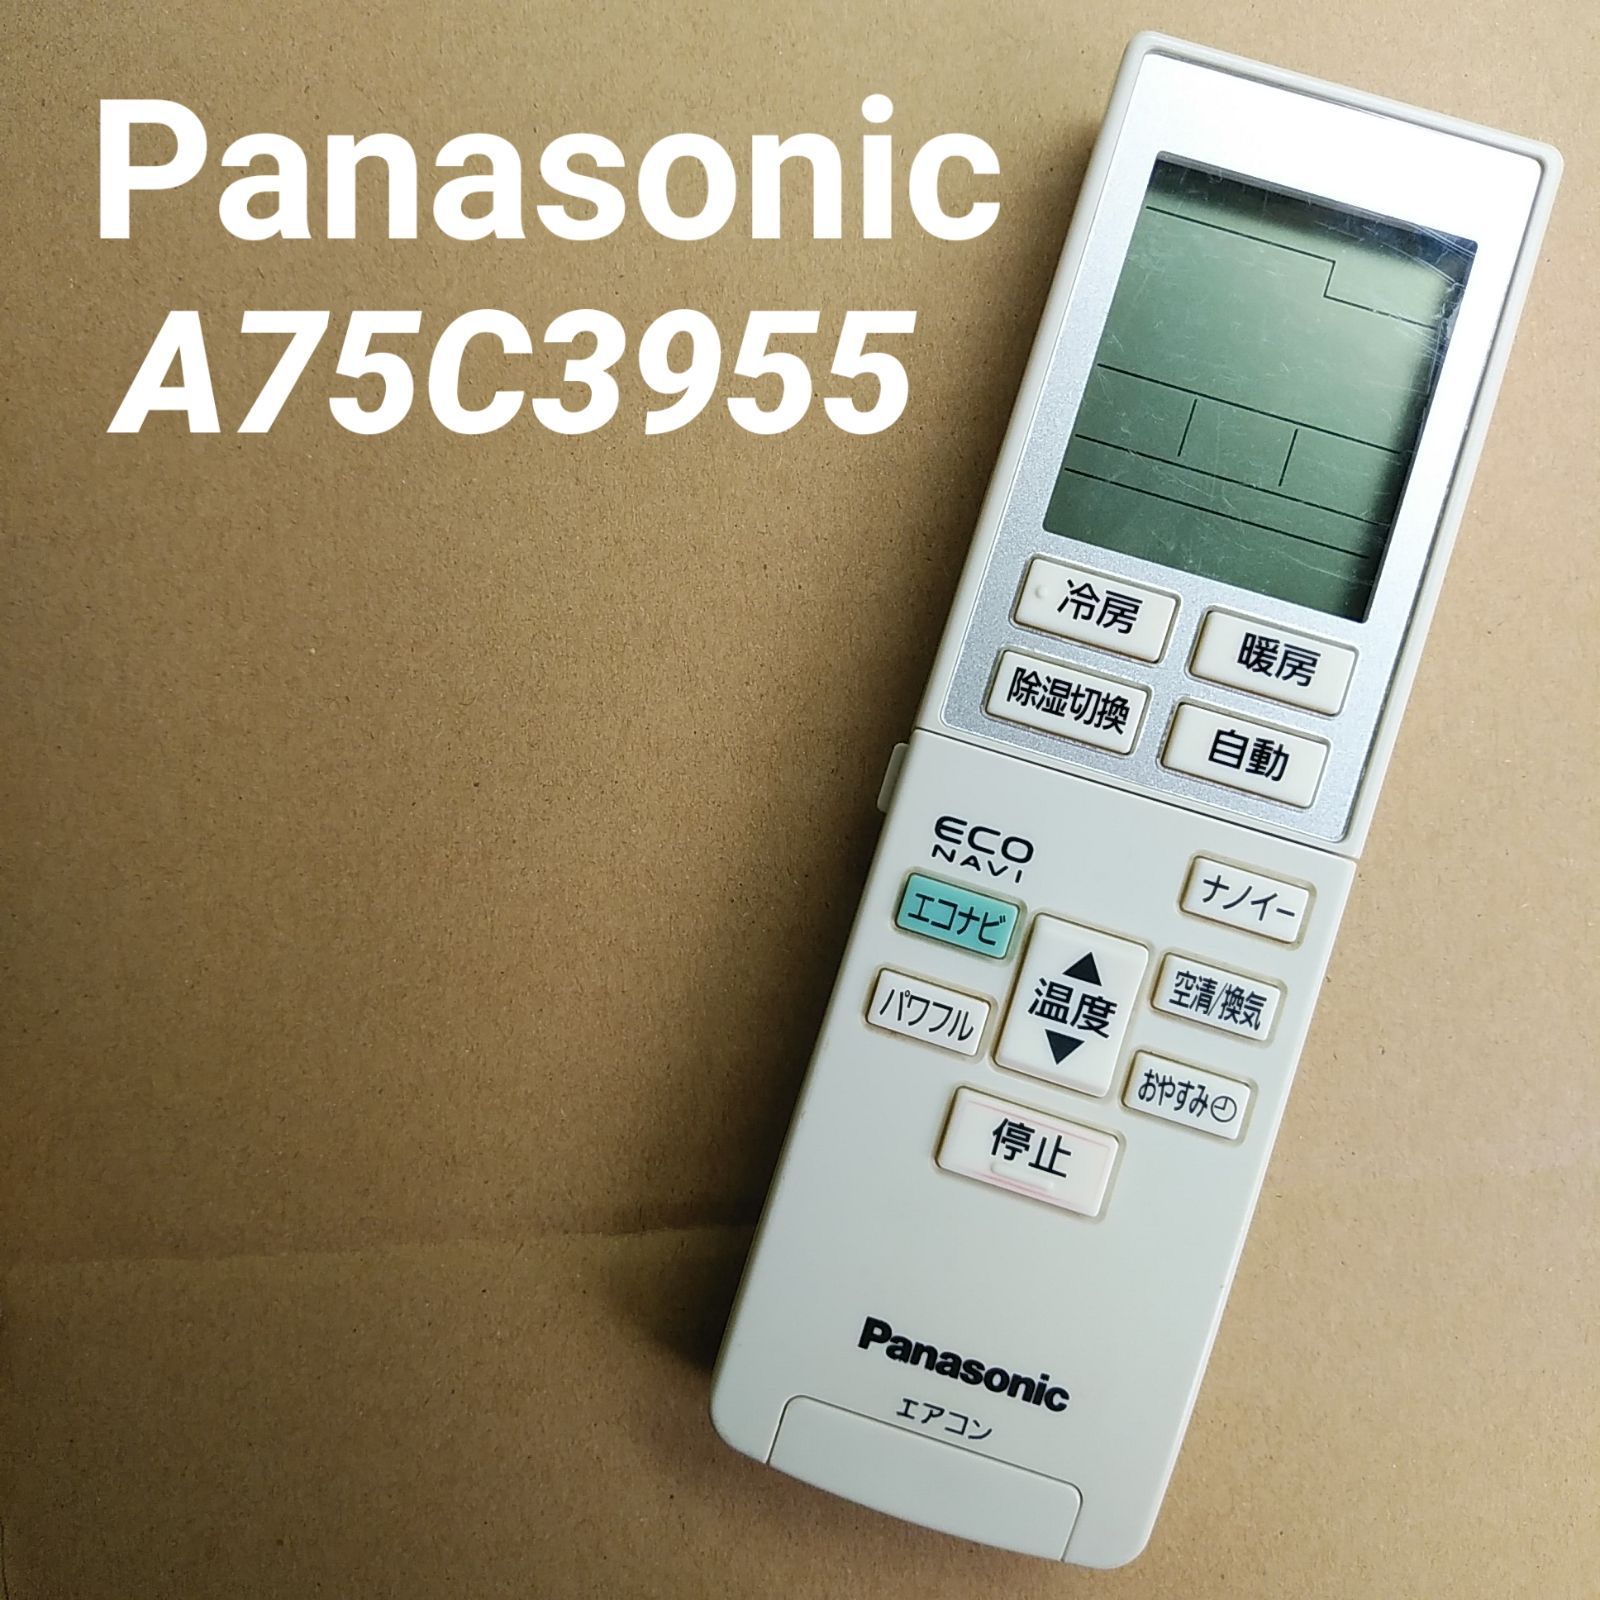 パナソニック リモコン A75C3955 - エアコン